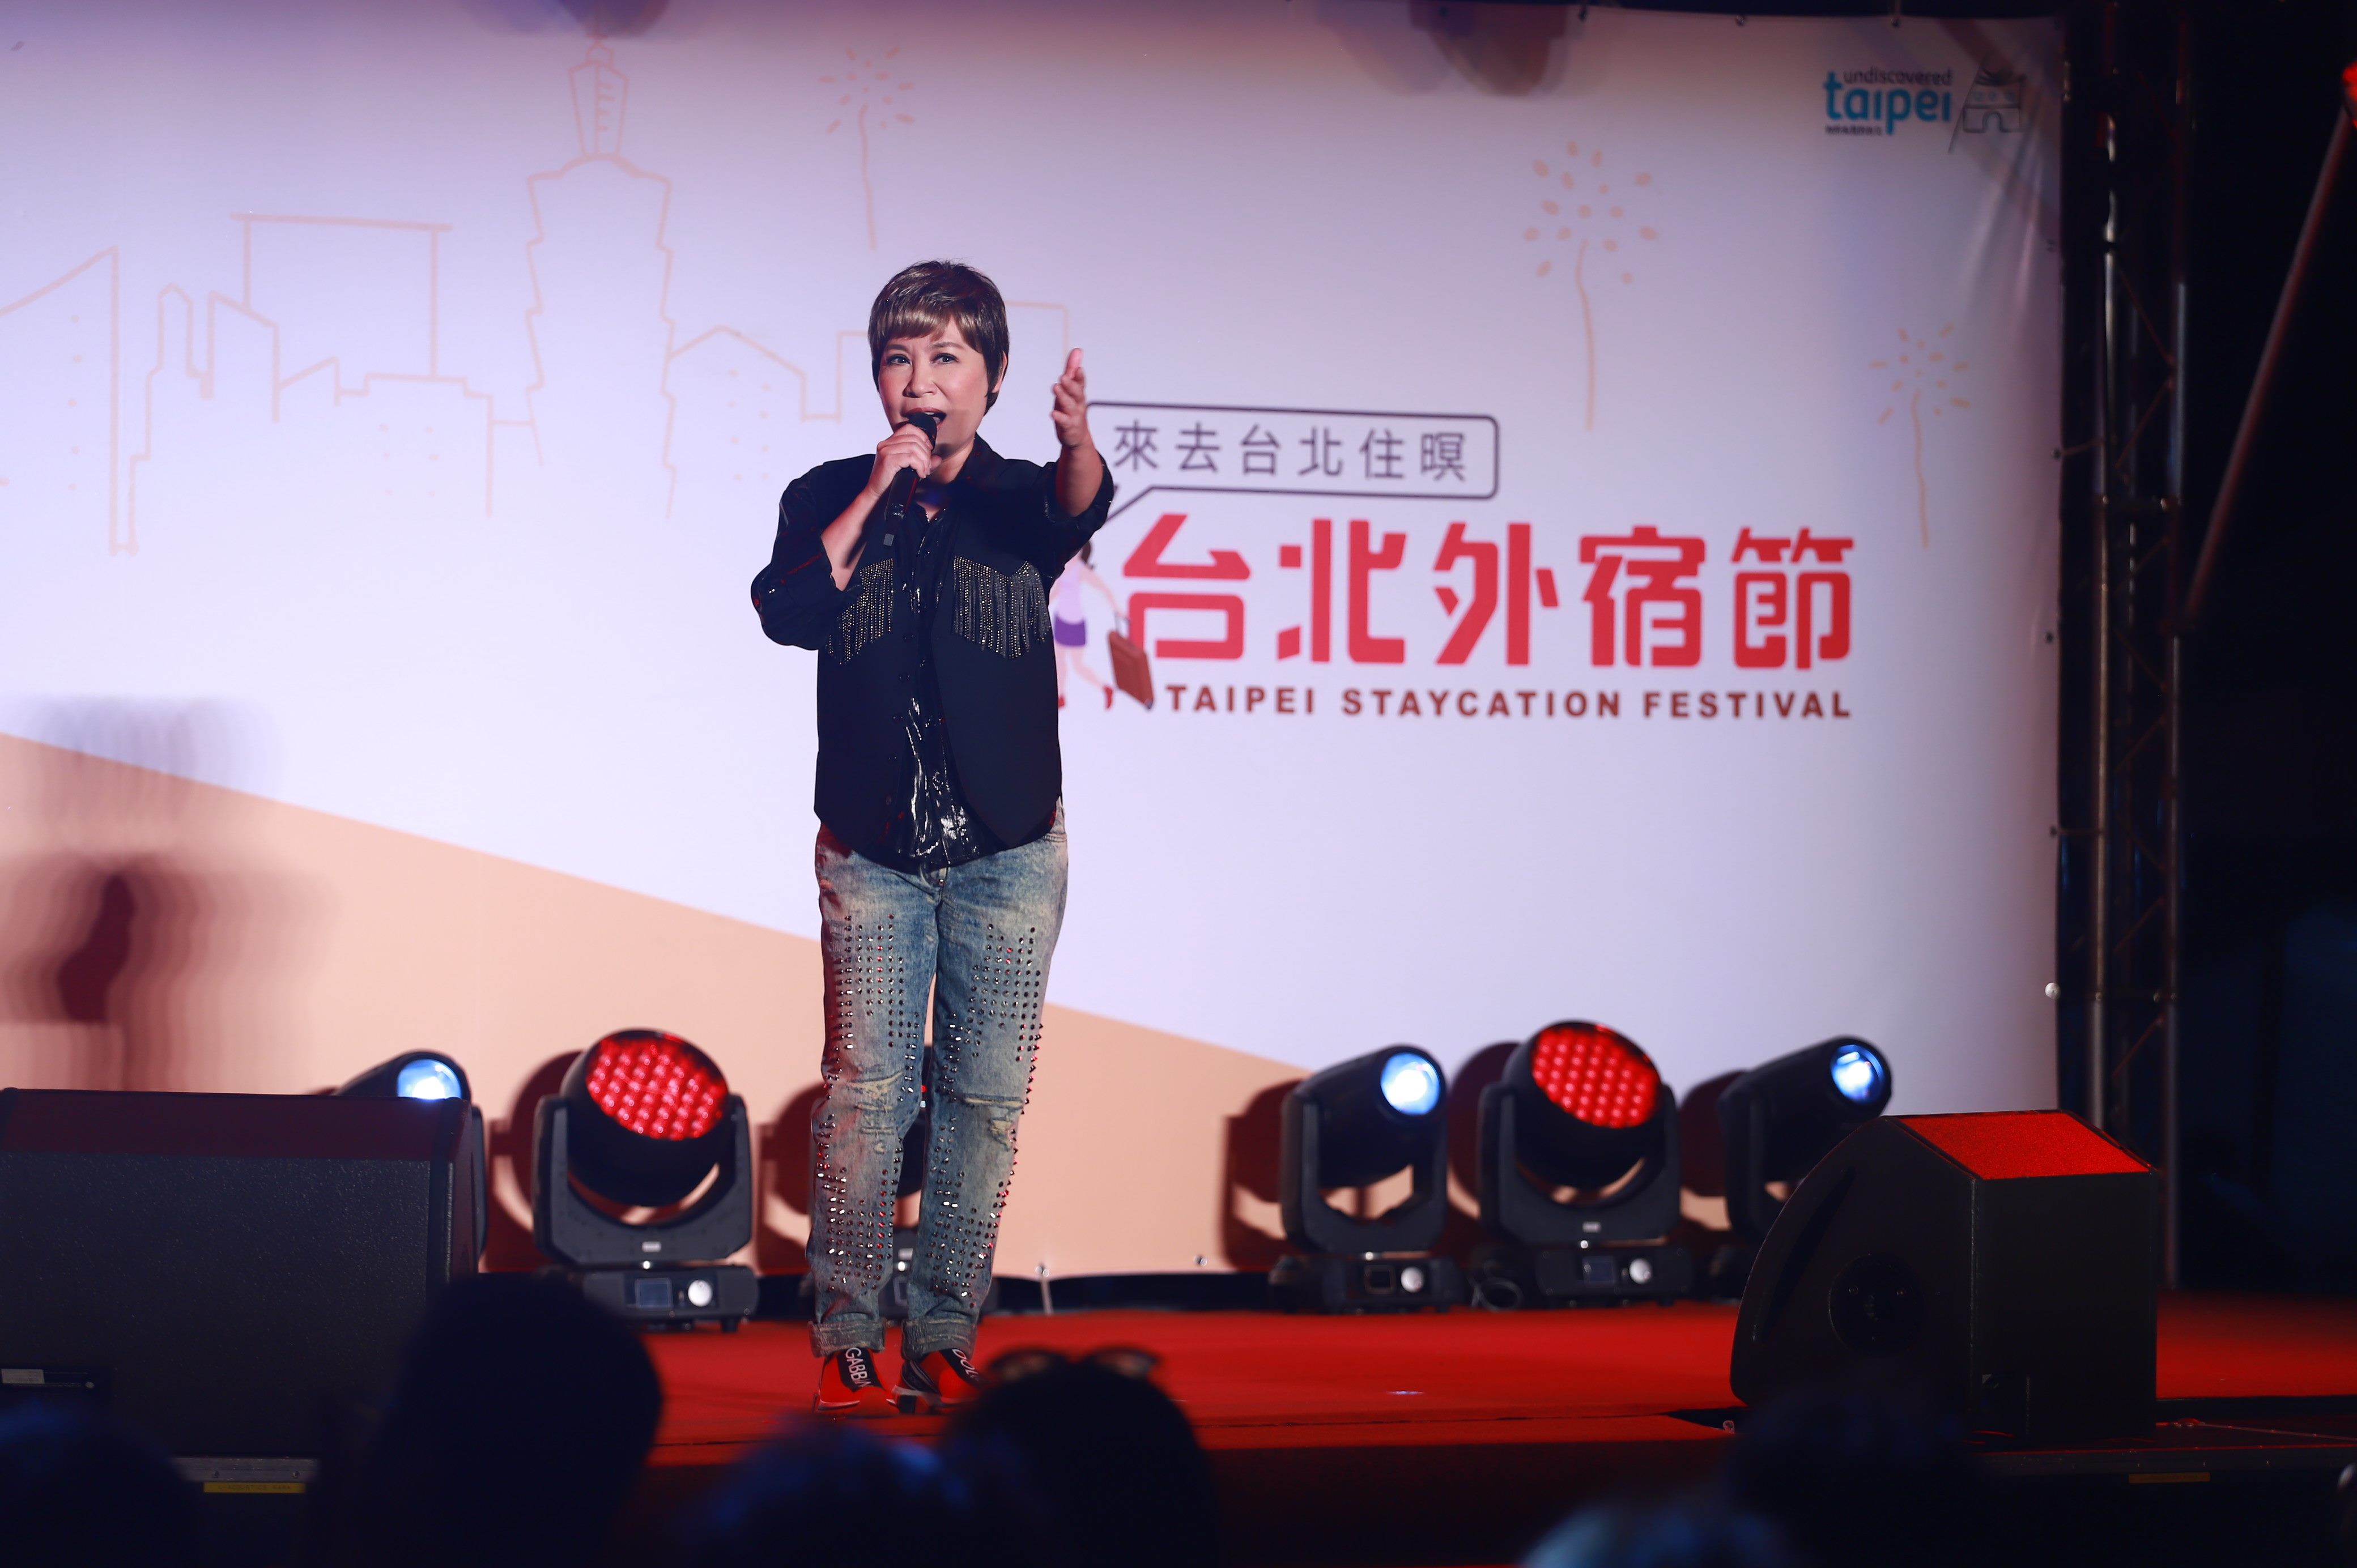 台北外宿節邀請黃小琥熱力開唱，現場觀眾陶醉浪漫氛圍。